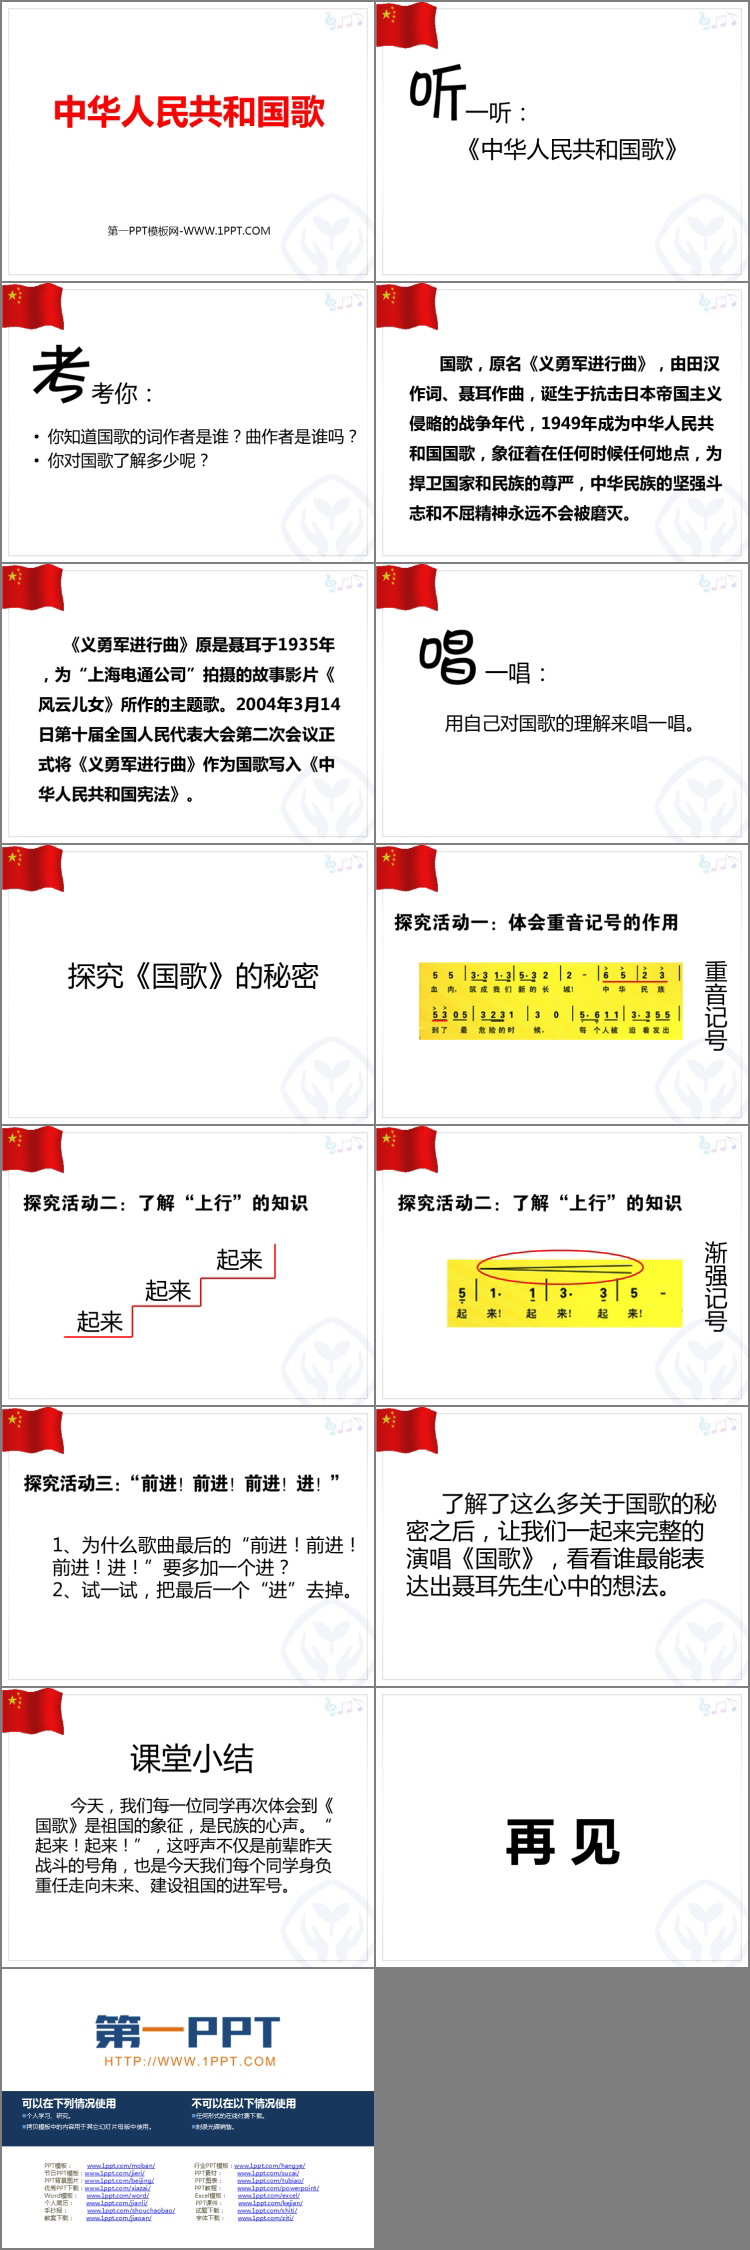 《中华人民共和国国歌》PPT免费课件